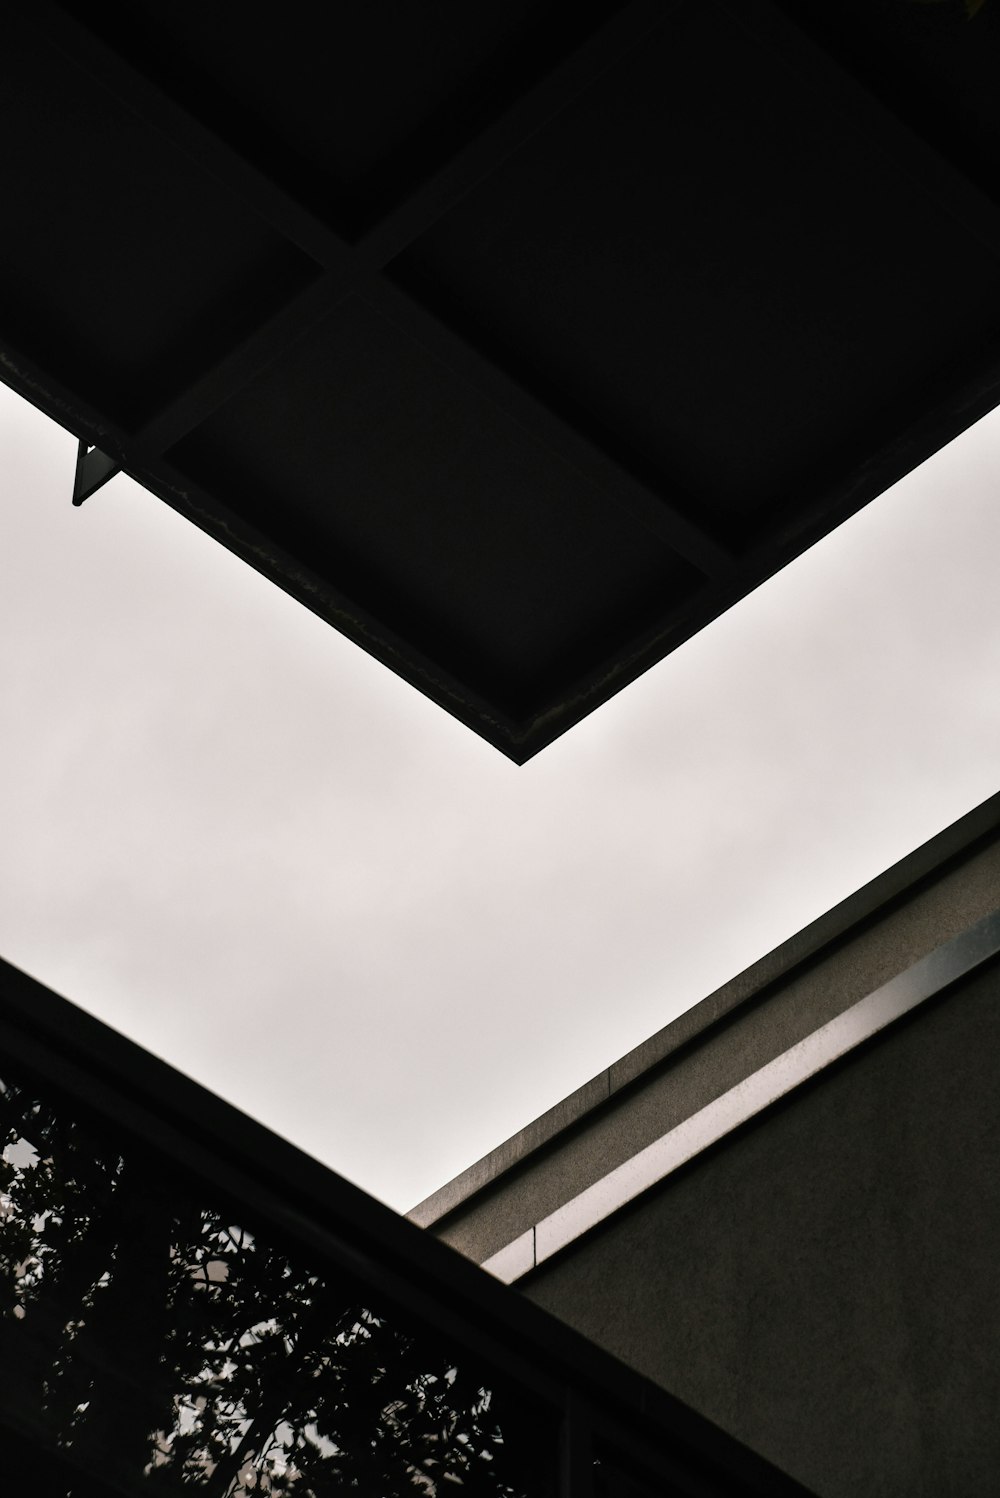 Una foto en blanco y negro de una claraboya y un edificio